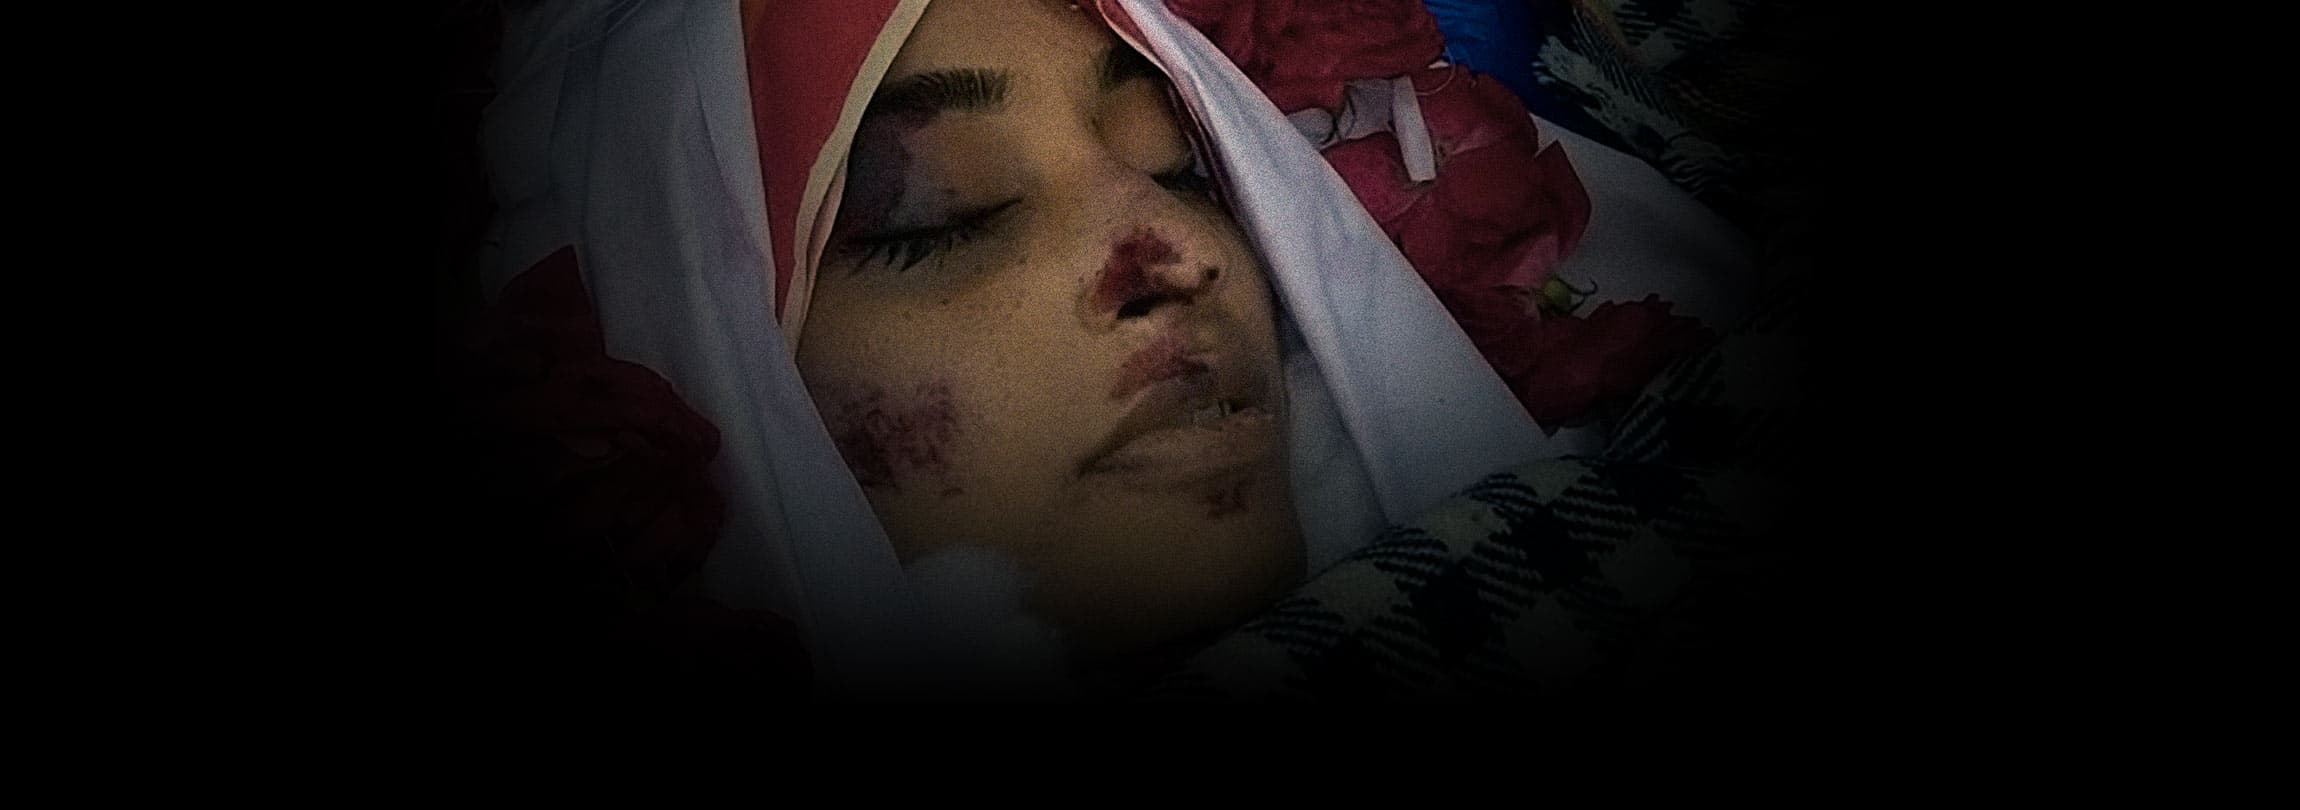 Assassinada no Paquistão porque se negou a dormir com muçulmanos